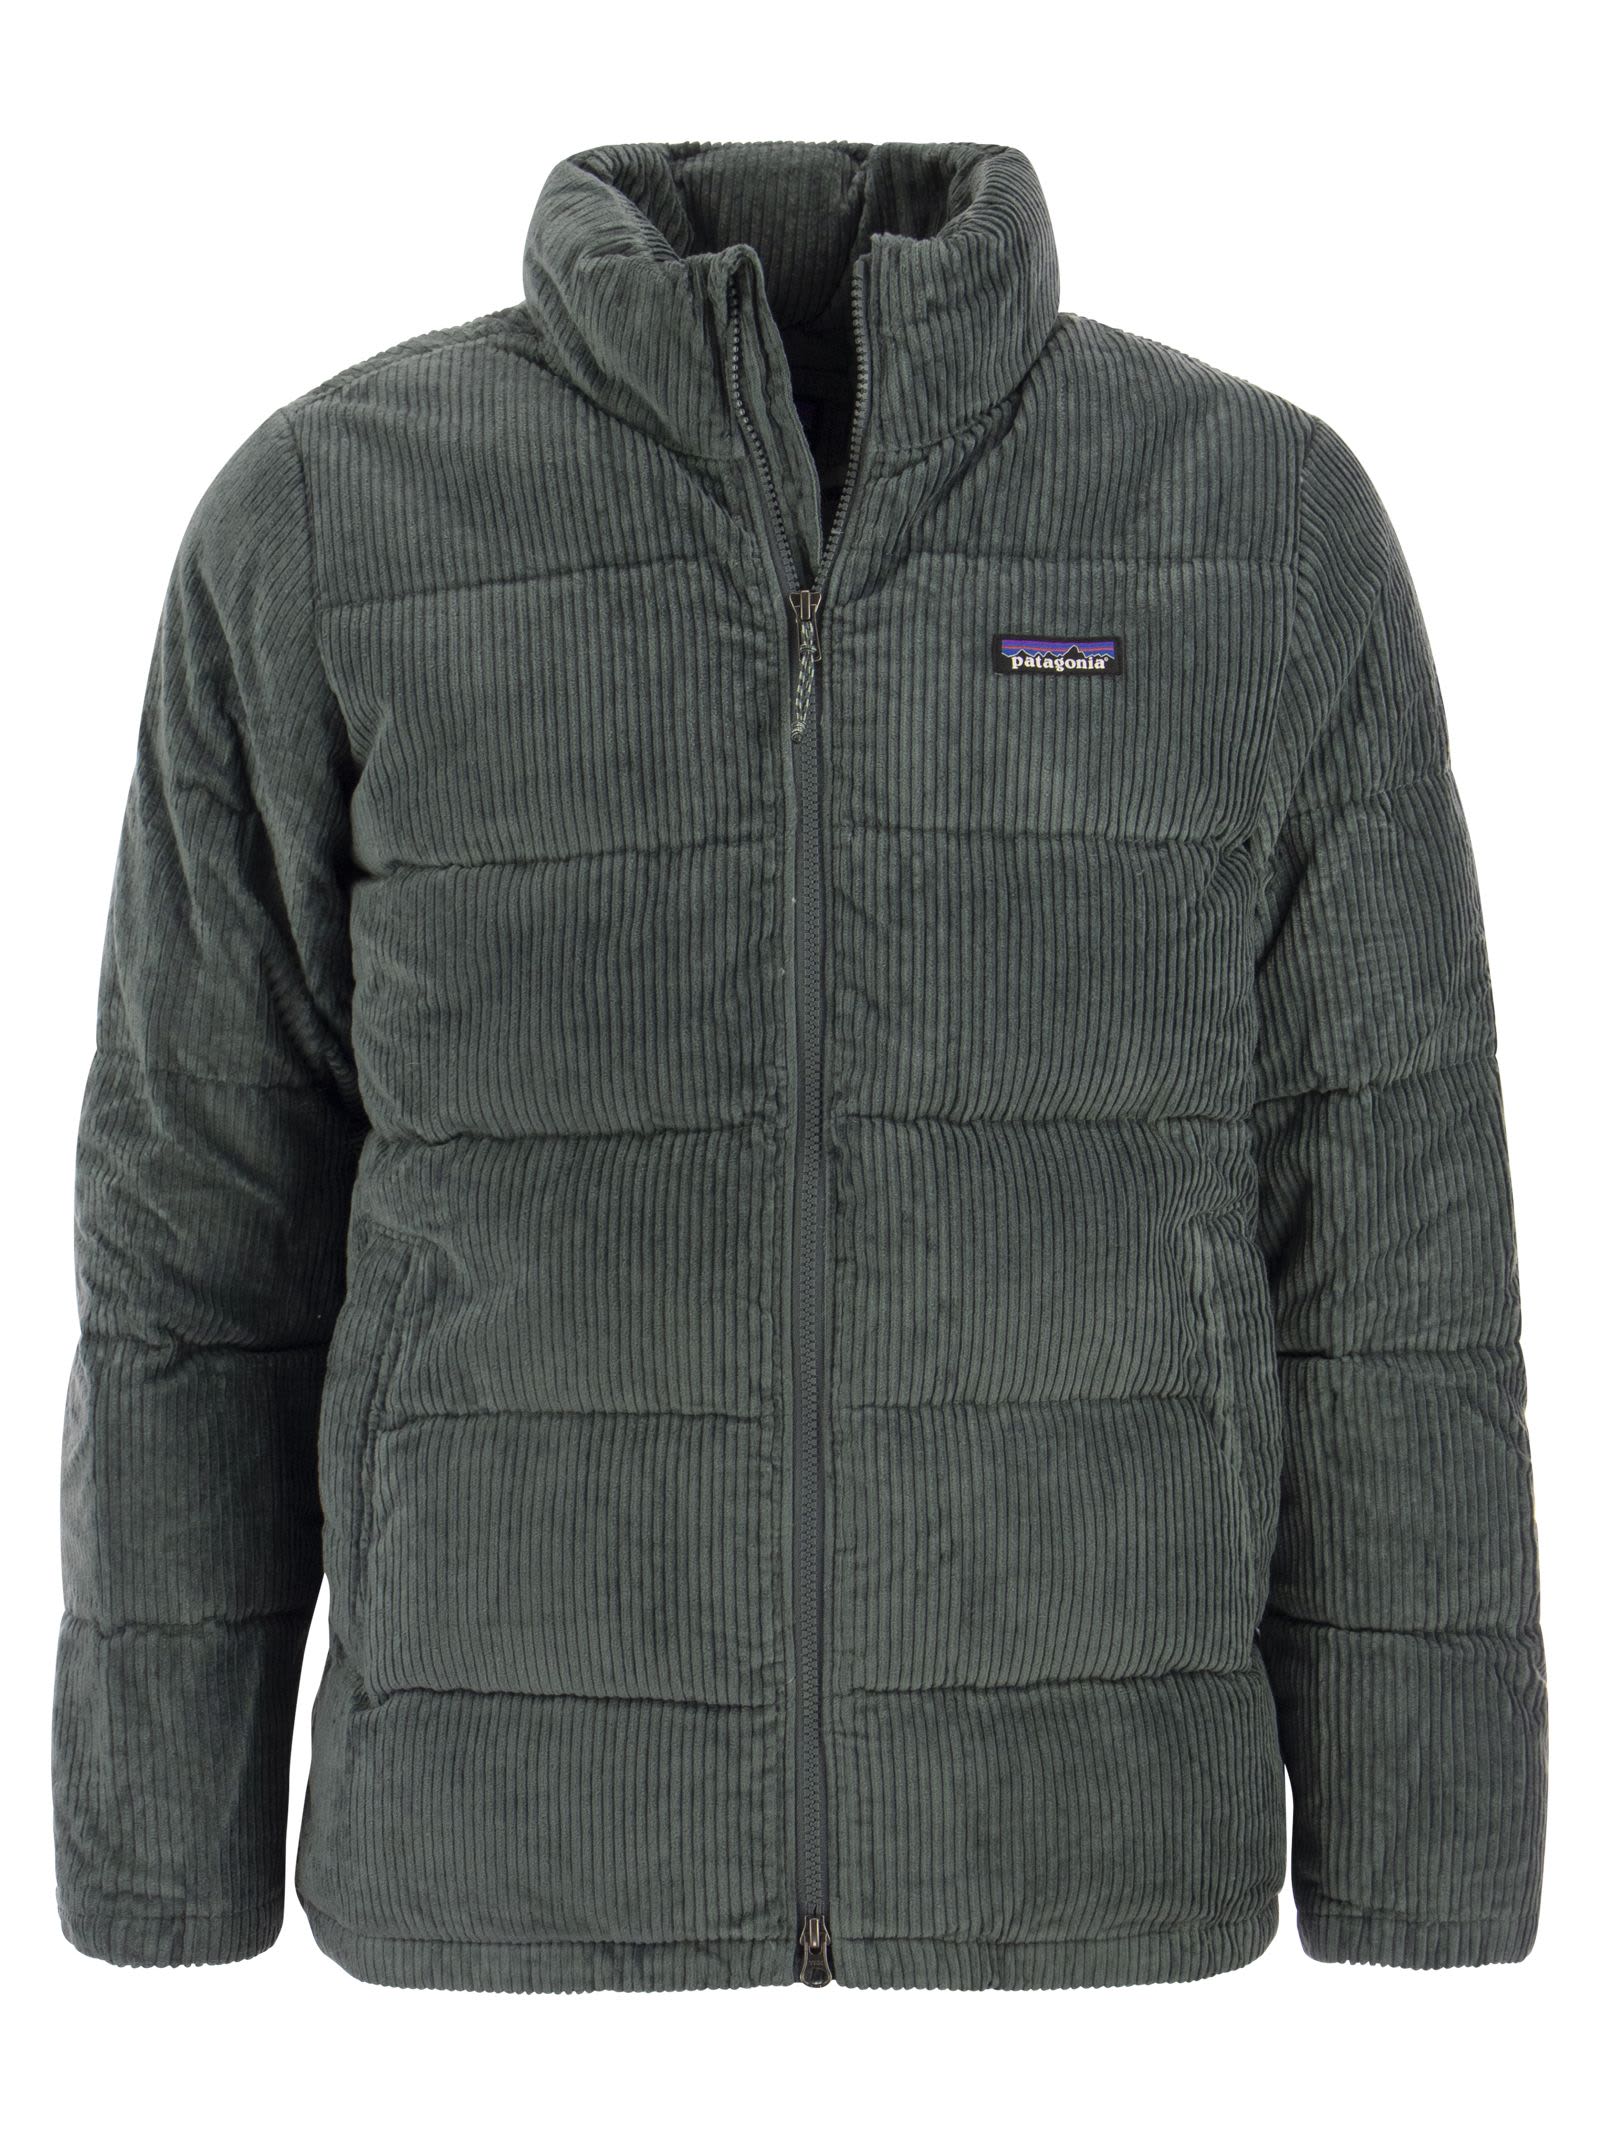 patagonia corduroy jacket